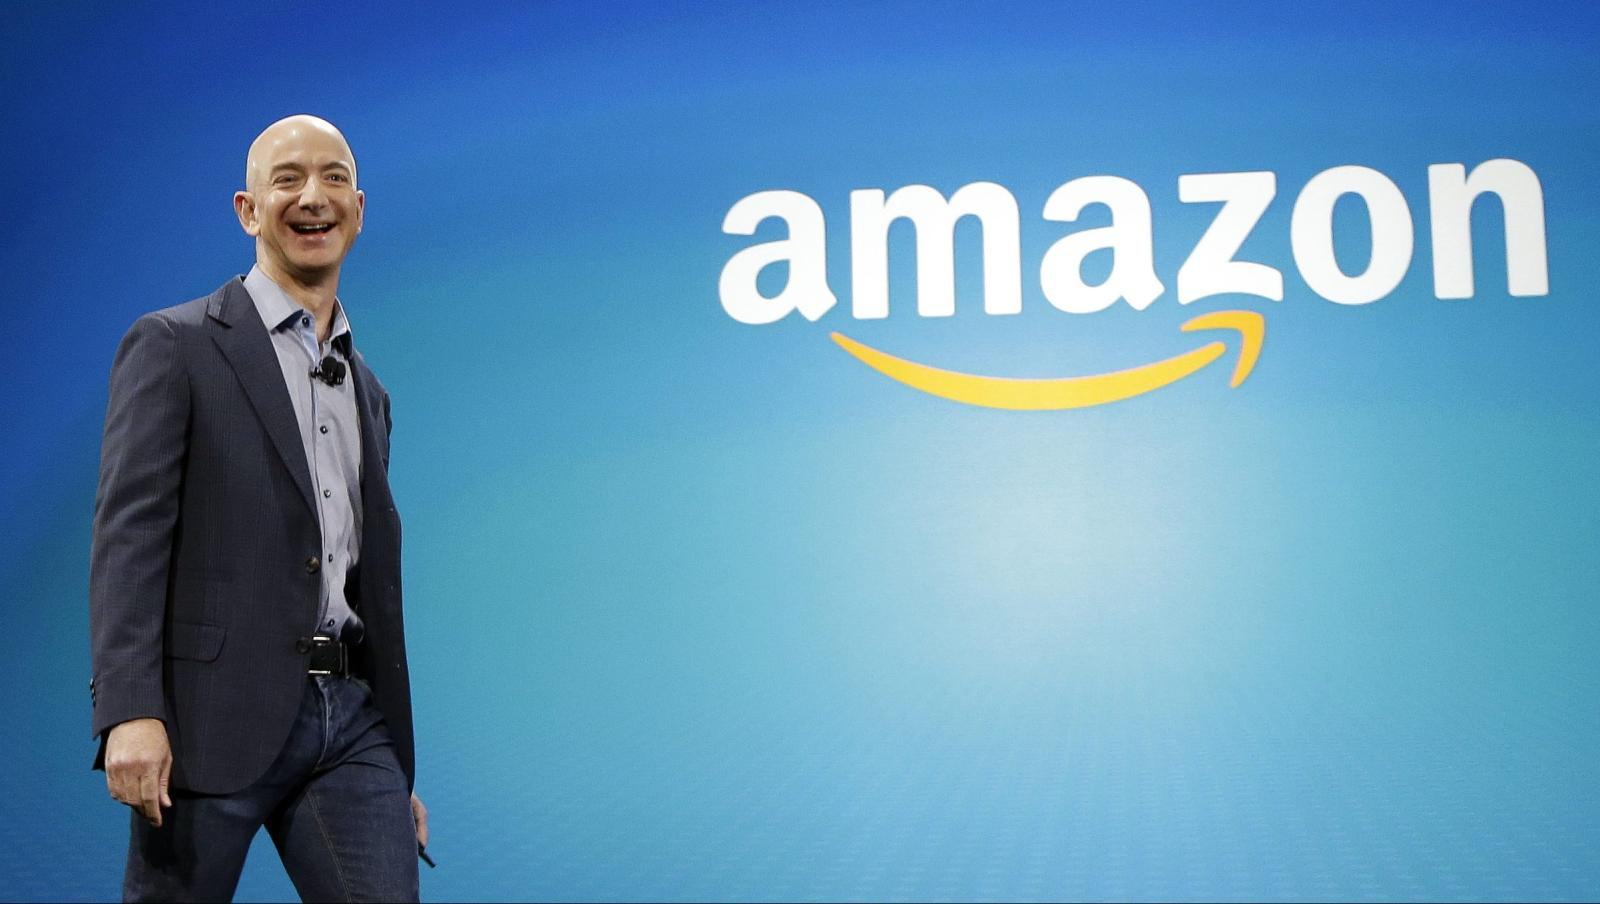 Ty phu Jeff Bezos; Thuong mai dien tu Amazon; quyen rieng tu; lao dong Amazon anh 1